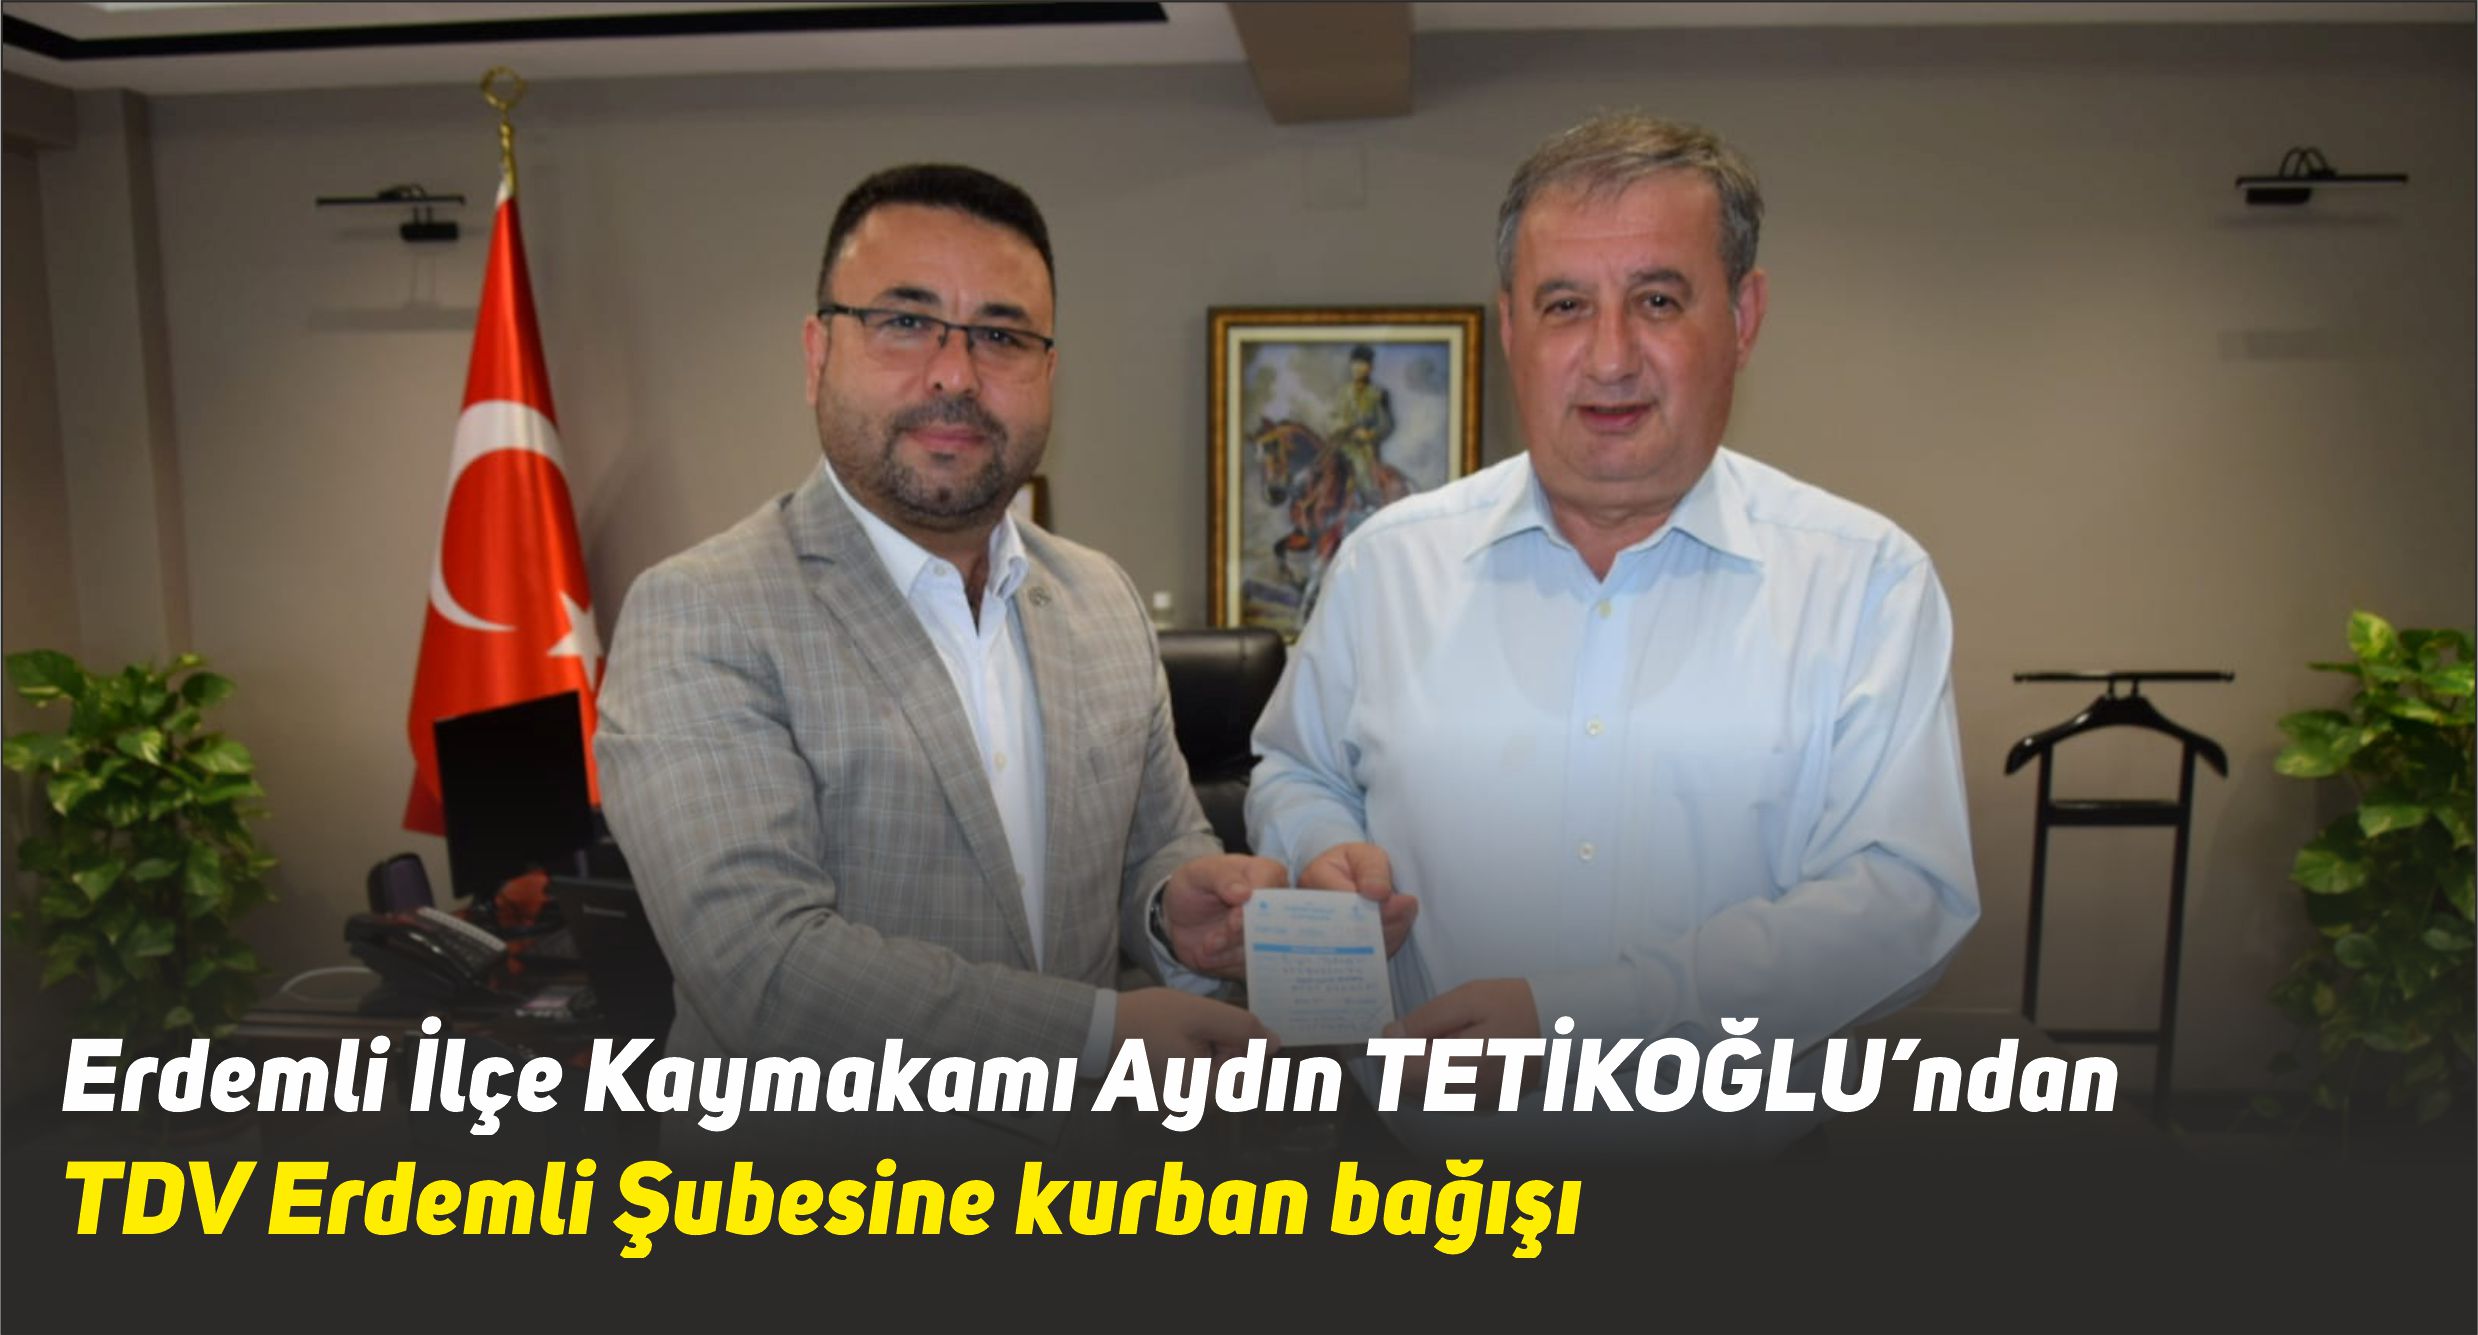 Kaymakam Tetikoğlu’ndan TDV’ye kurban bağışı